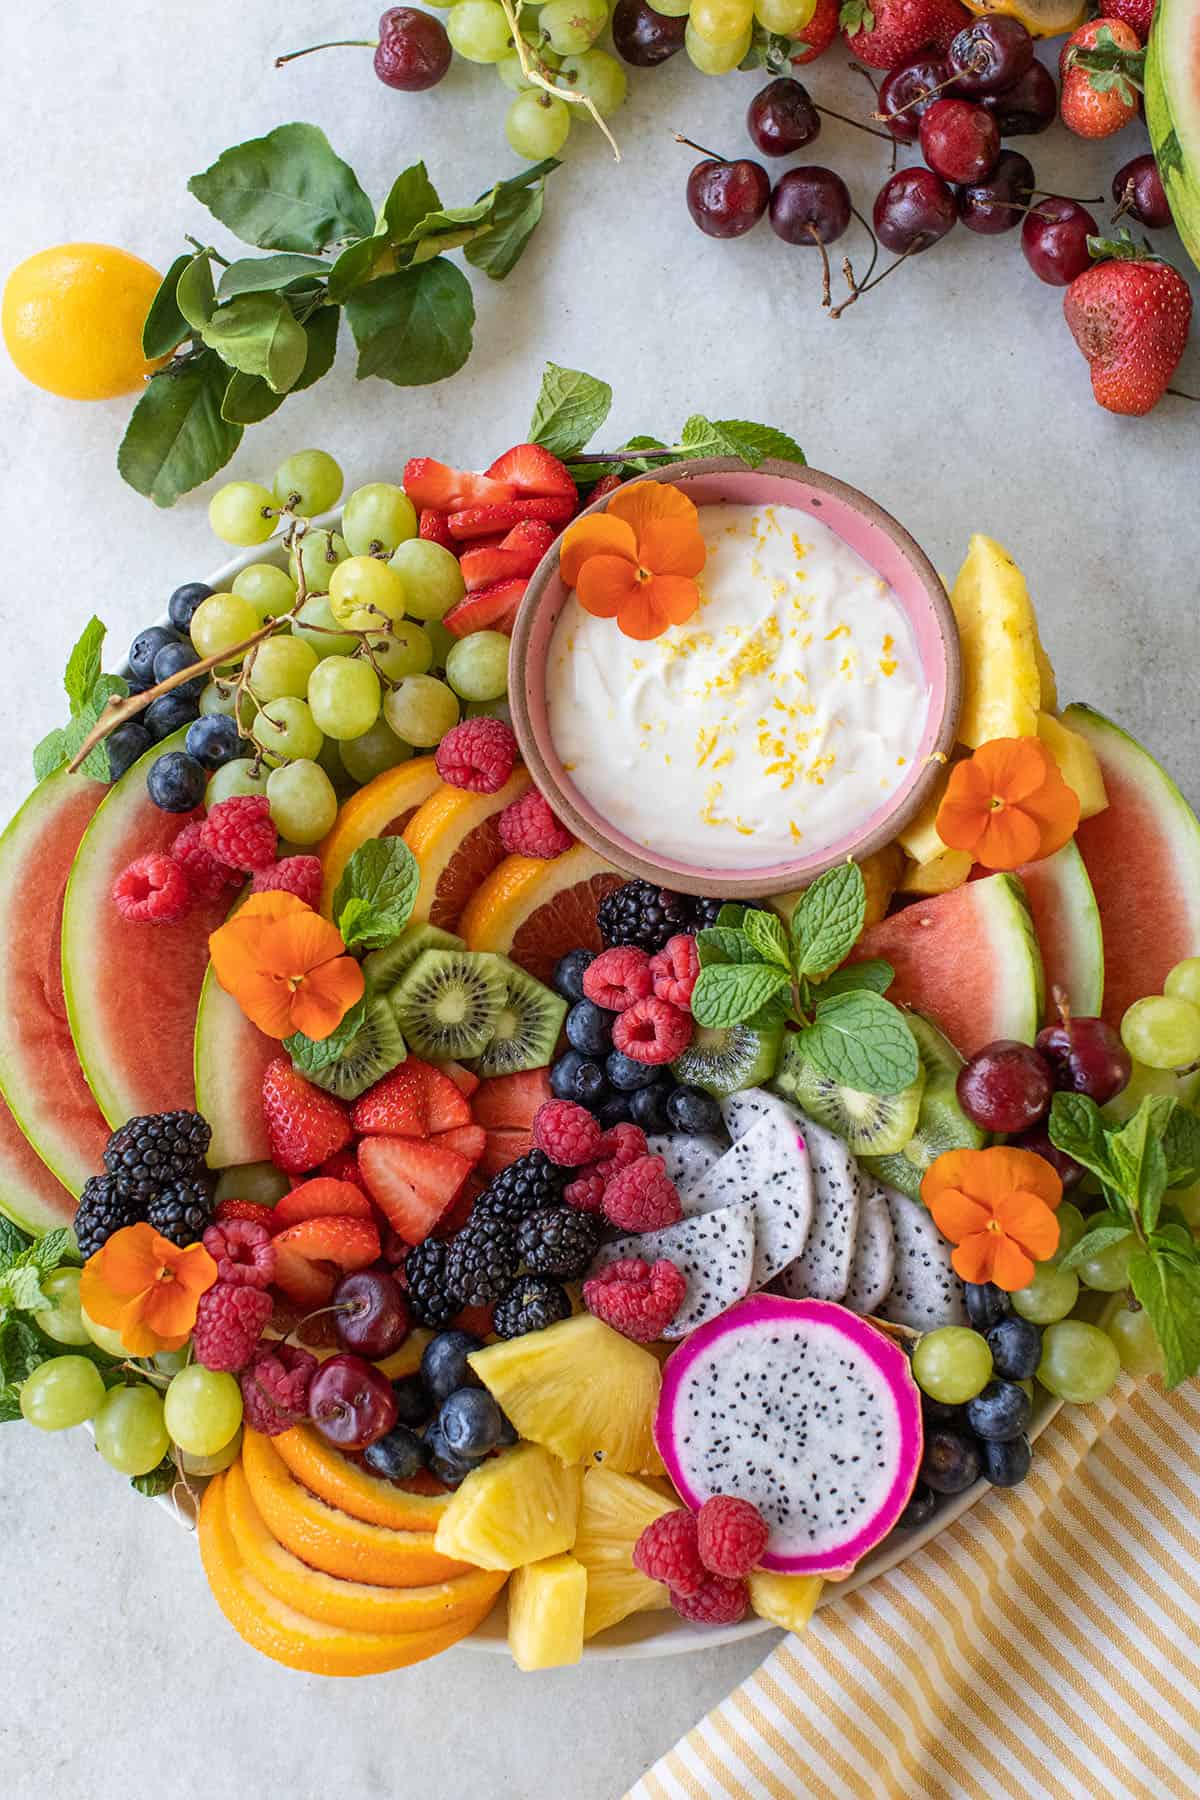 easy fresh fruit platter ideas